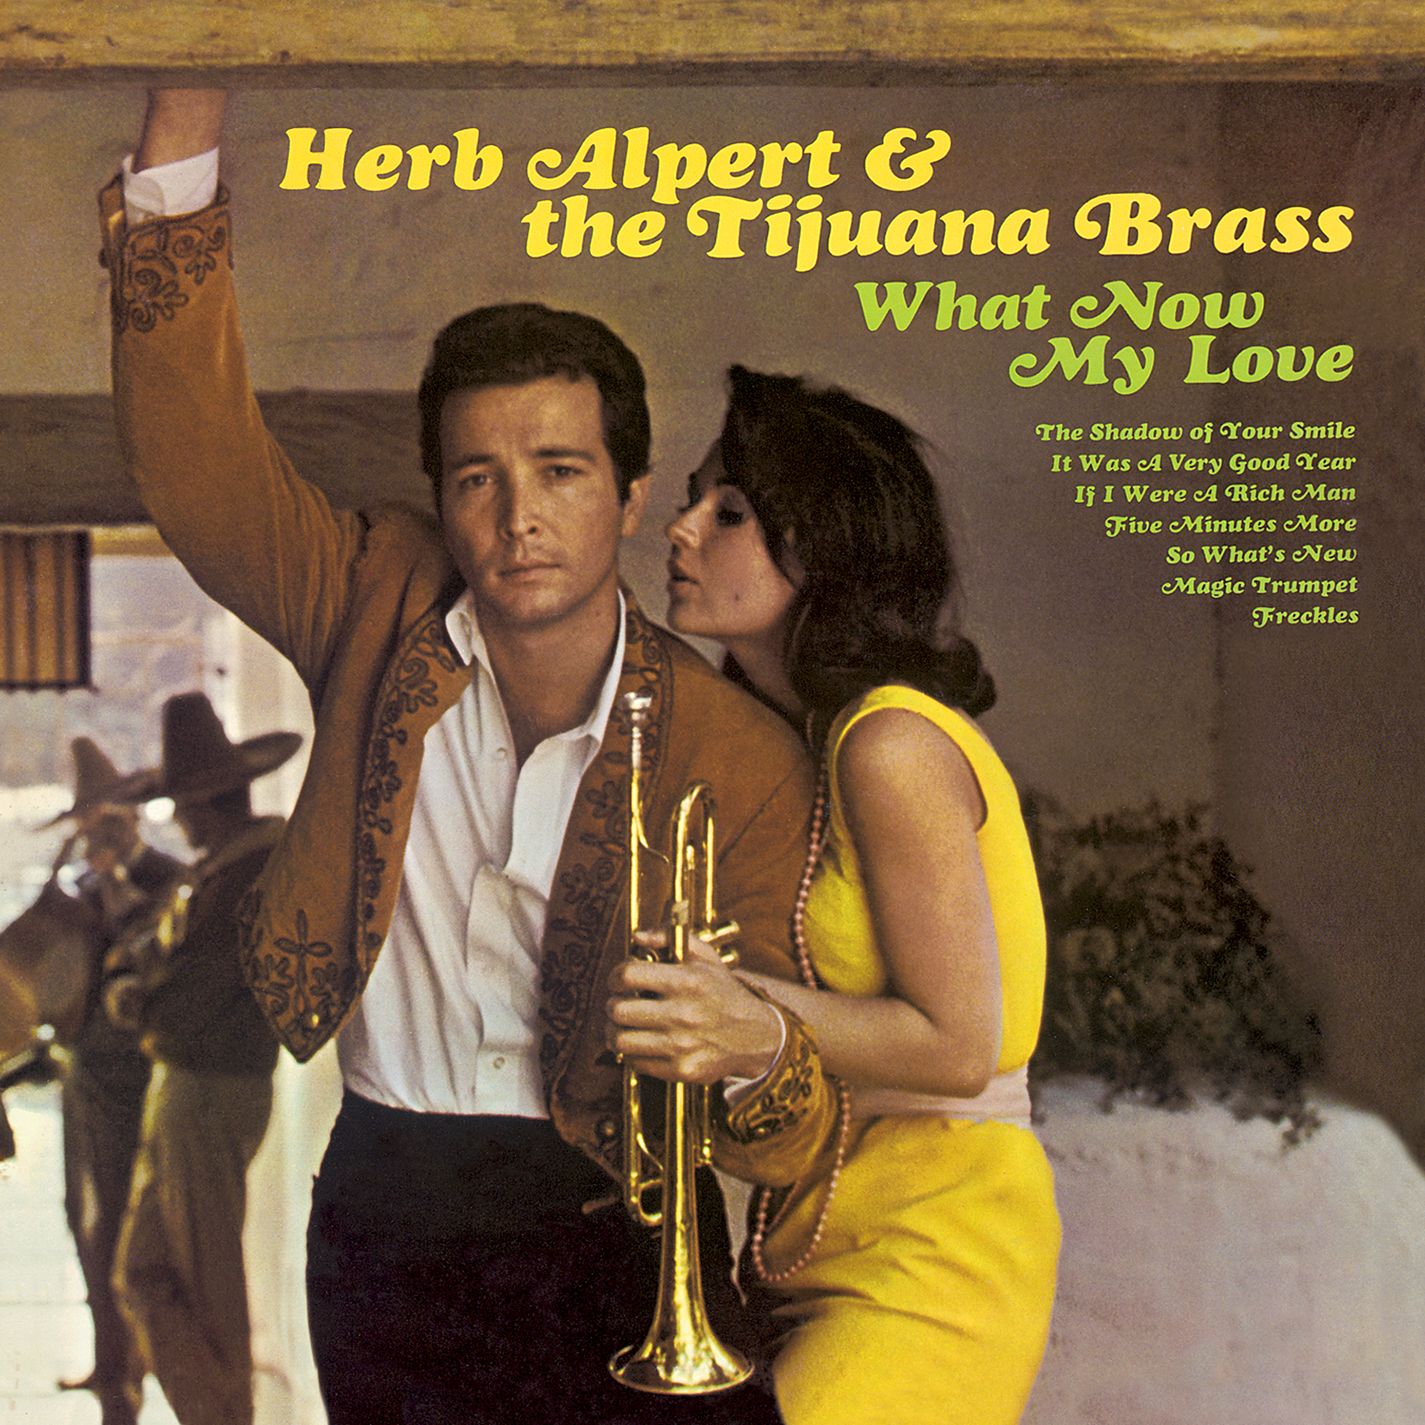 Herb Alpert & The Tijuana Brass - What Now My Love (1966/2015) [AcousticSounds FLAC 24bit/88,2kHz]